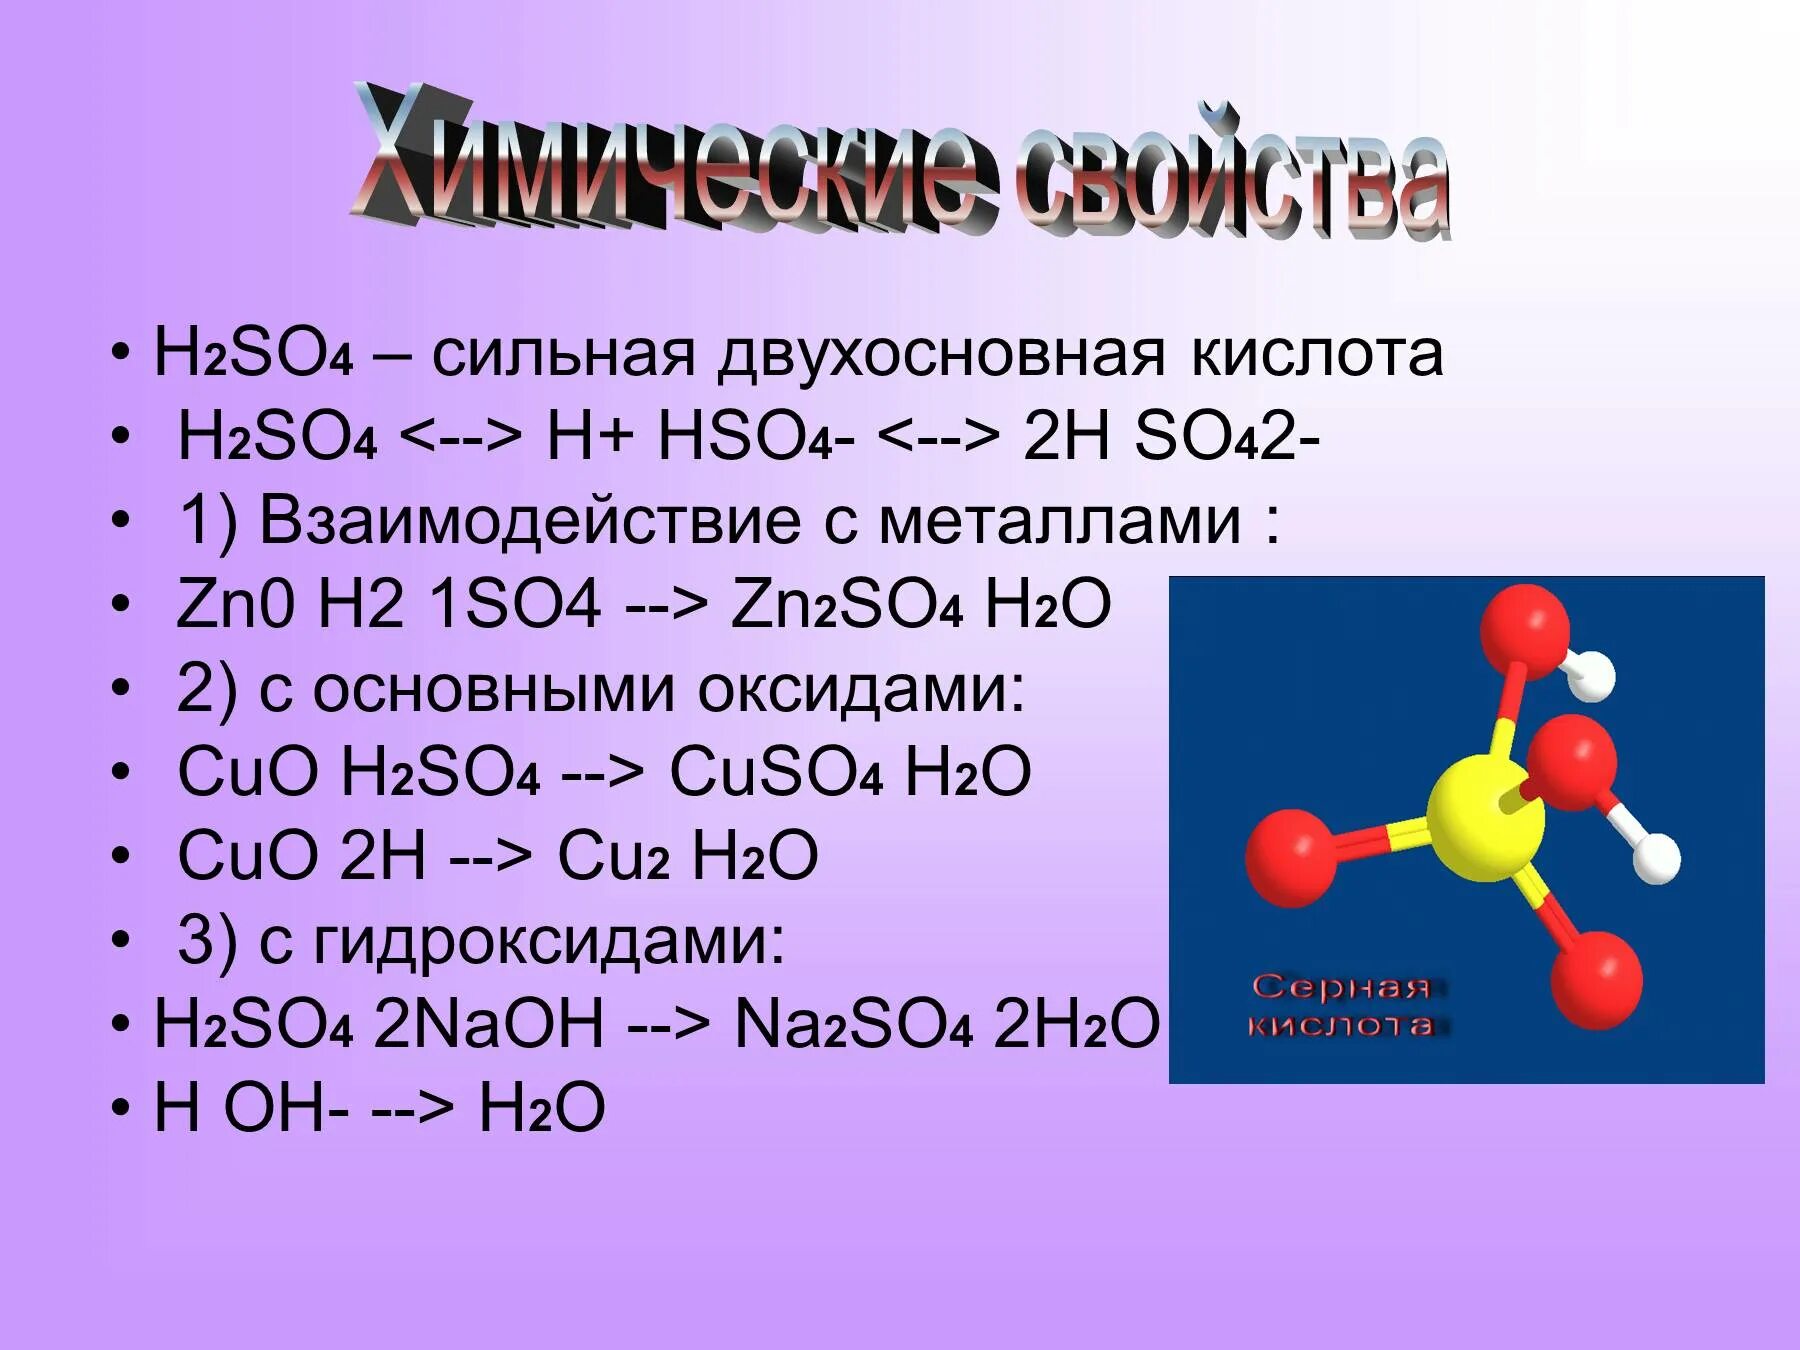 Н s o. Формула серной кислоты h2so4. Химическая формула серной кислоты h2so4. H2ro4. H2po4 двухосновнаая кислота.